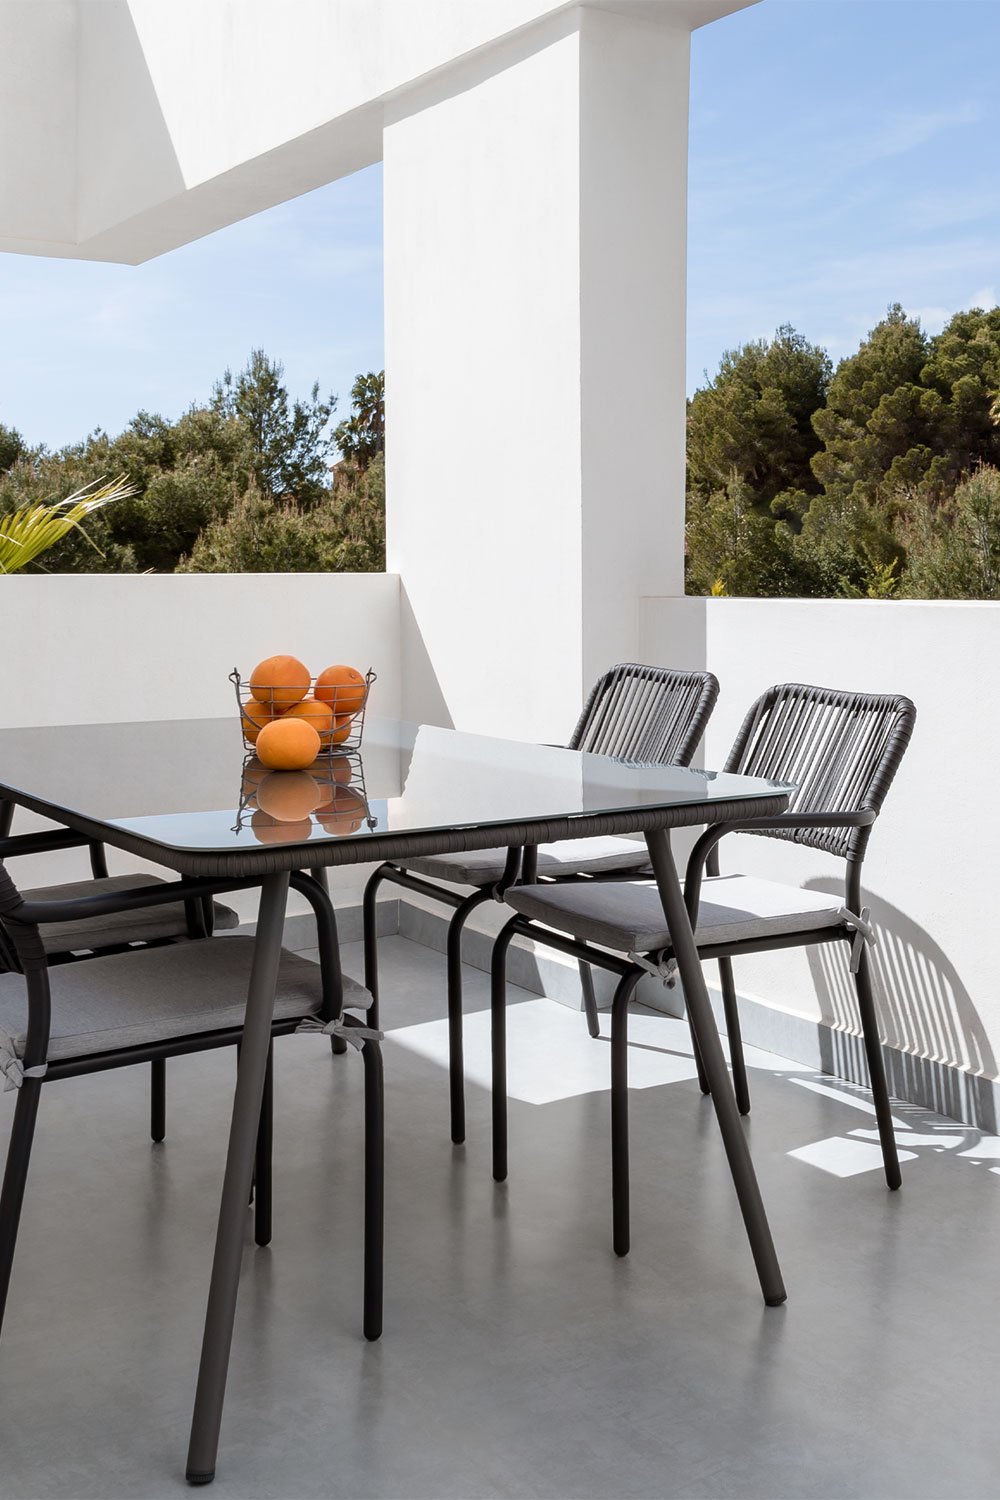 Tuinset met tafel en 4 stoelen Arhiza, galerij beeld 1